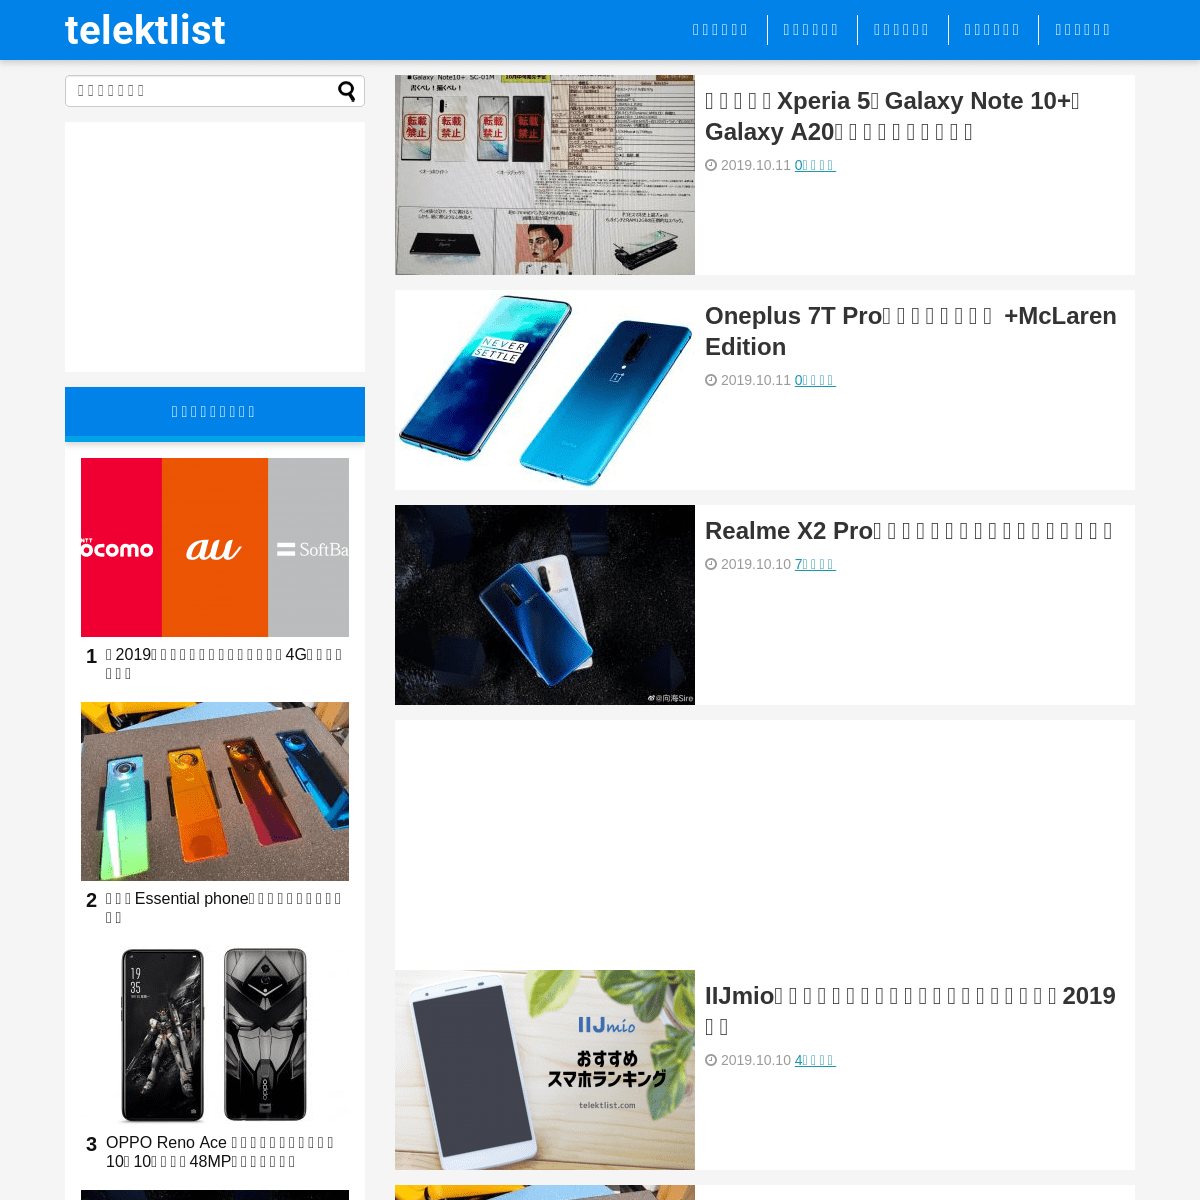 A complete backup of telektlist.com